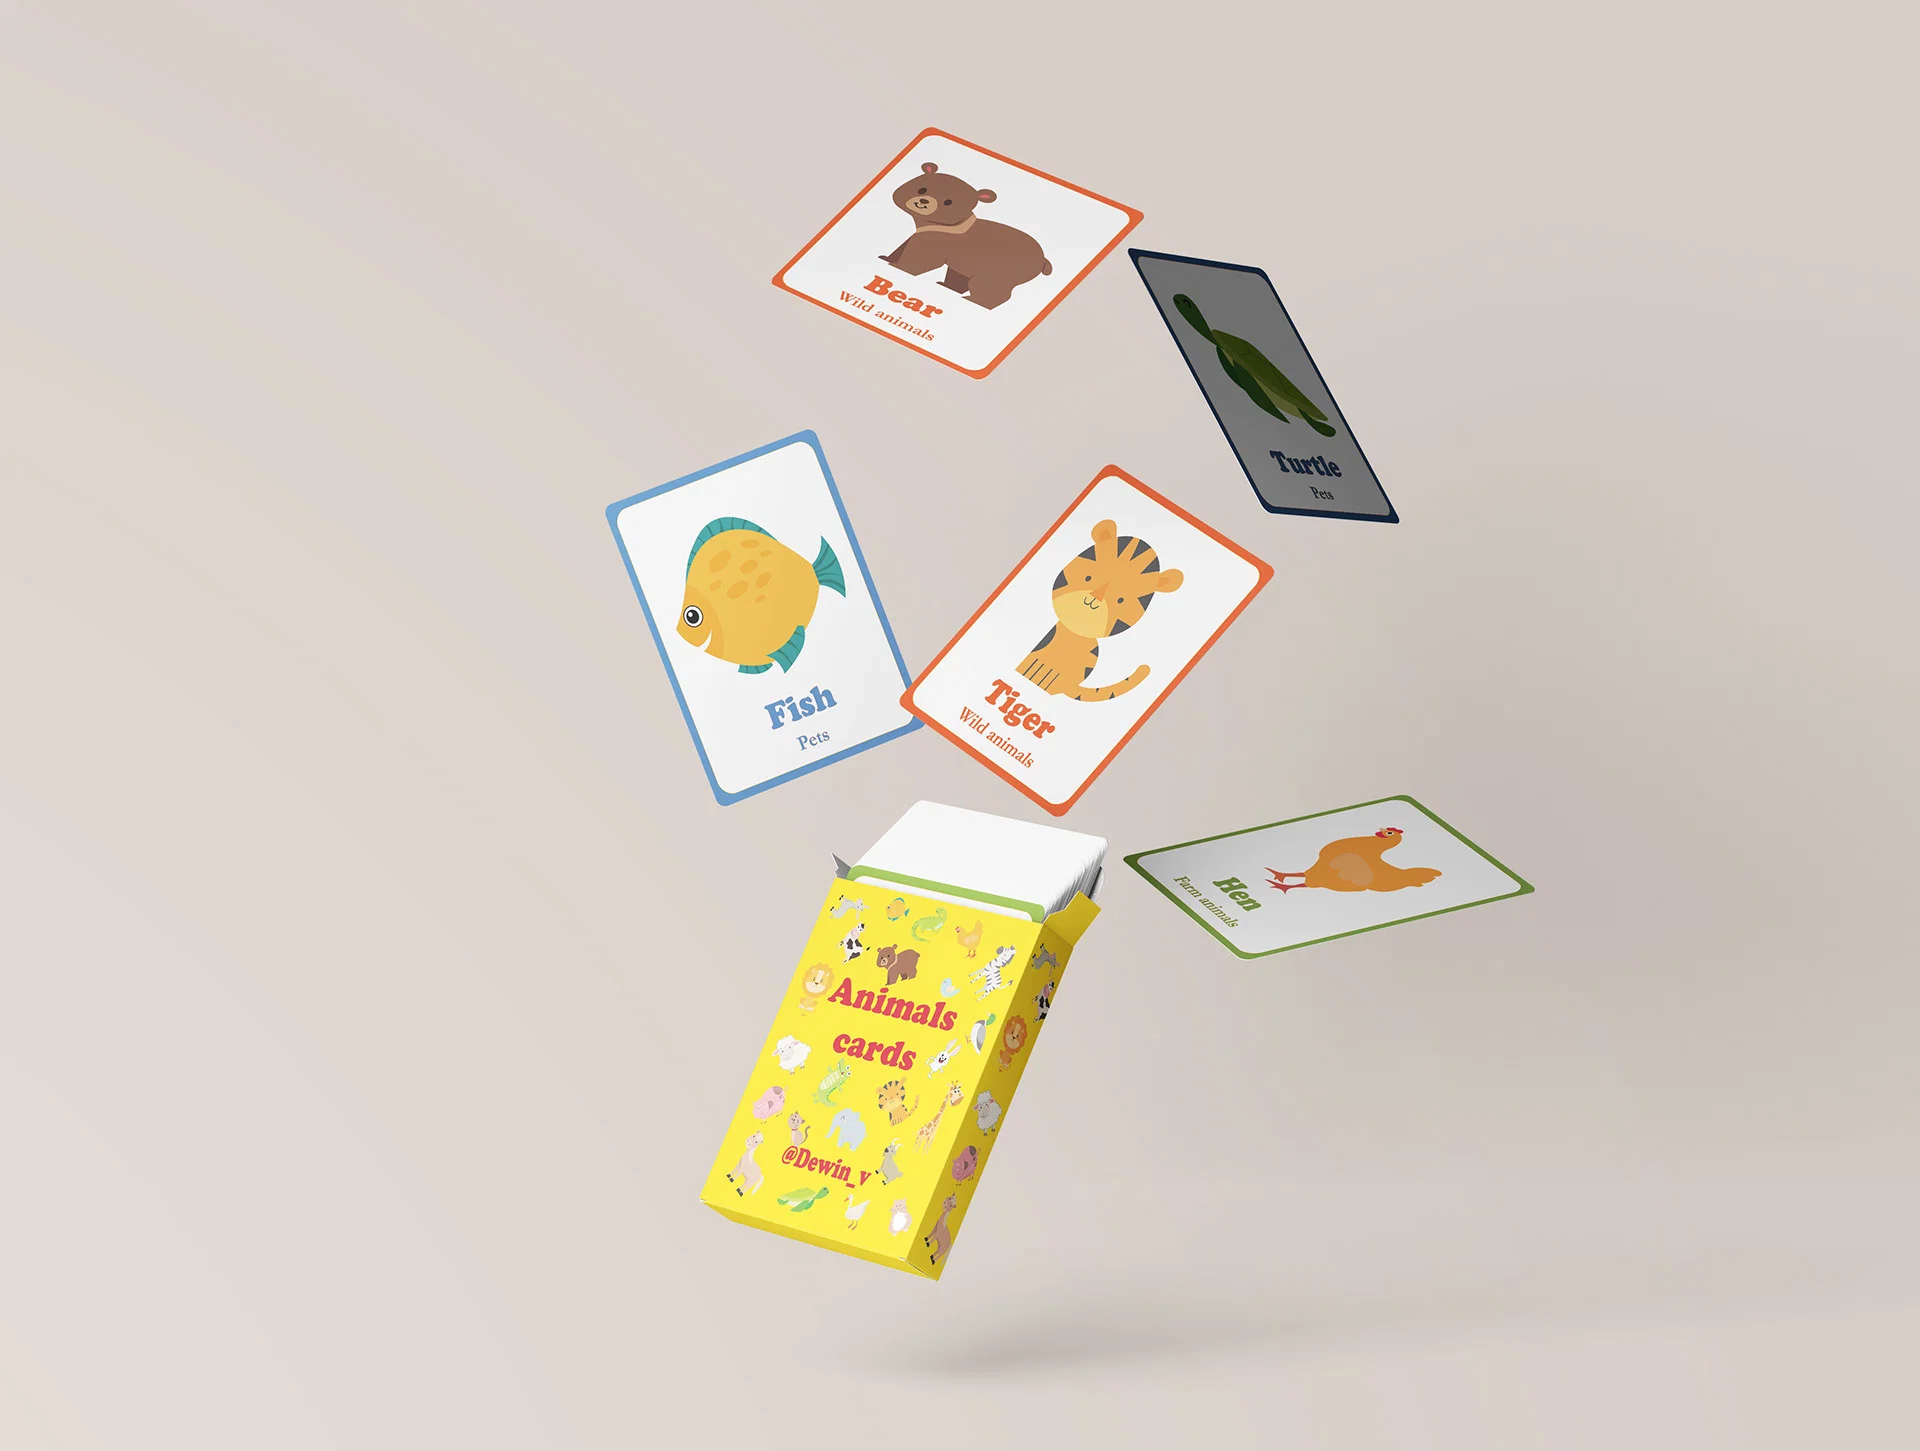 Fabricant OEM Custom Label les cartes Flash partie Paper Board jeux pour enfants